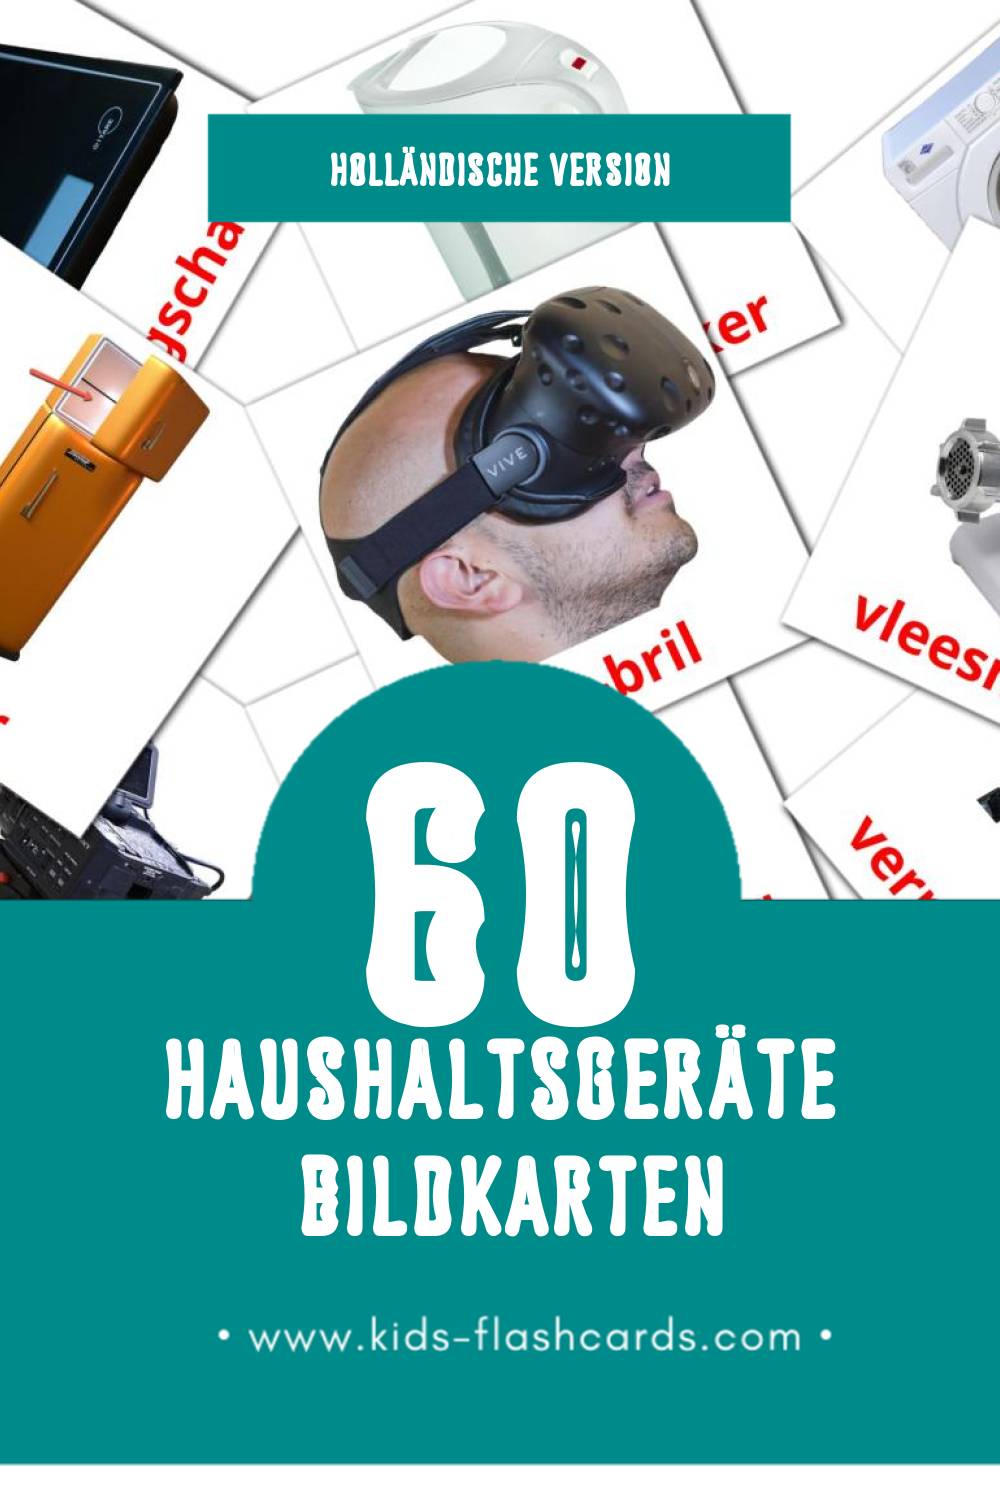 Visual Huishoudelijke apparaten Flashcards für Kleinkinder (60 Karten in Holländisch)